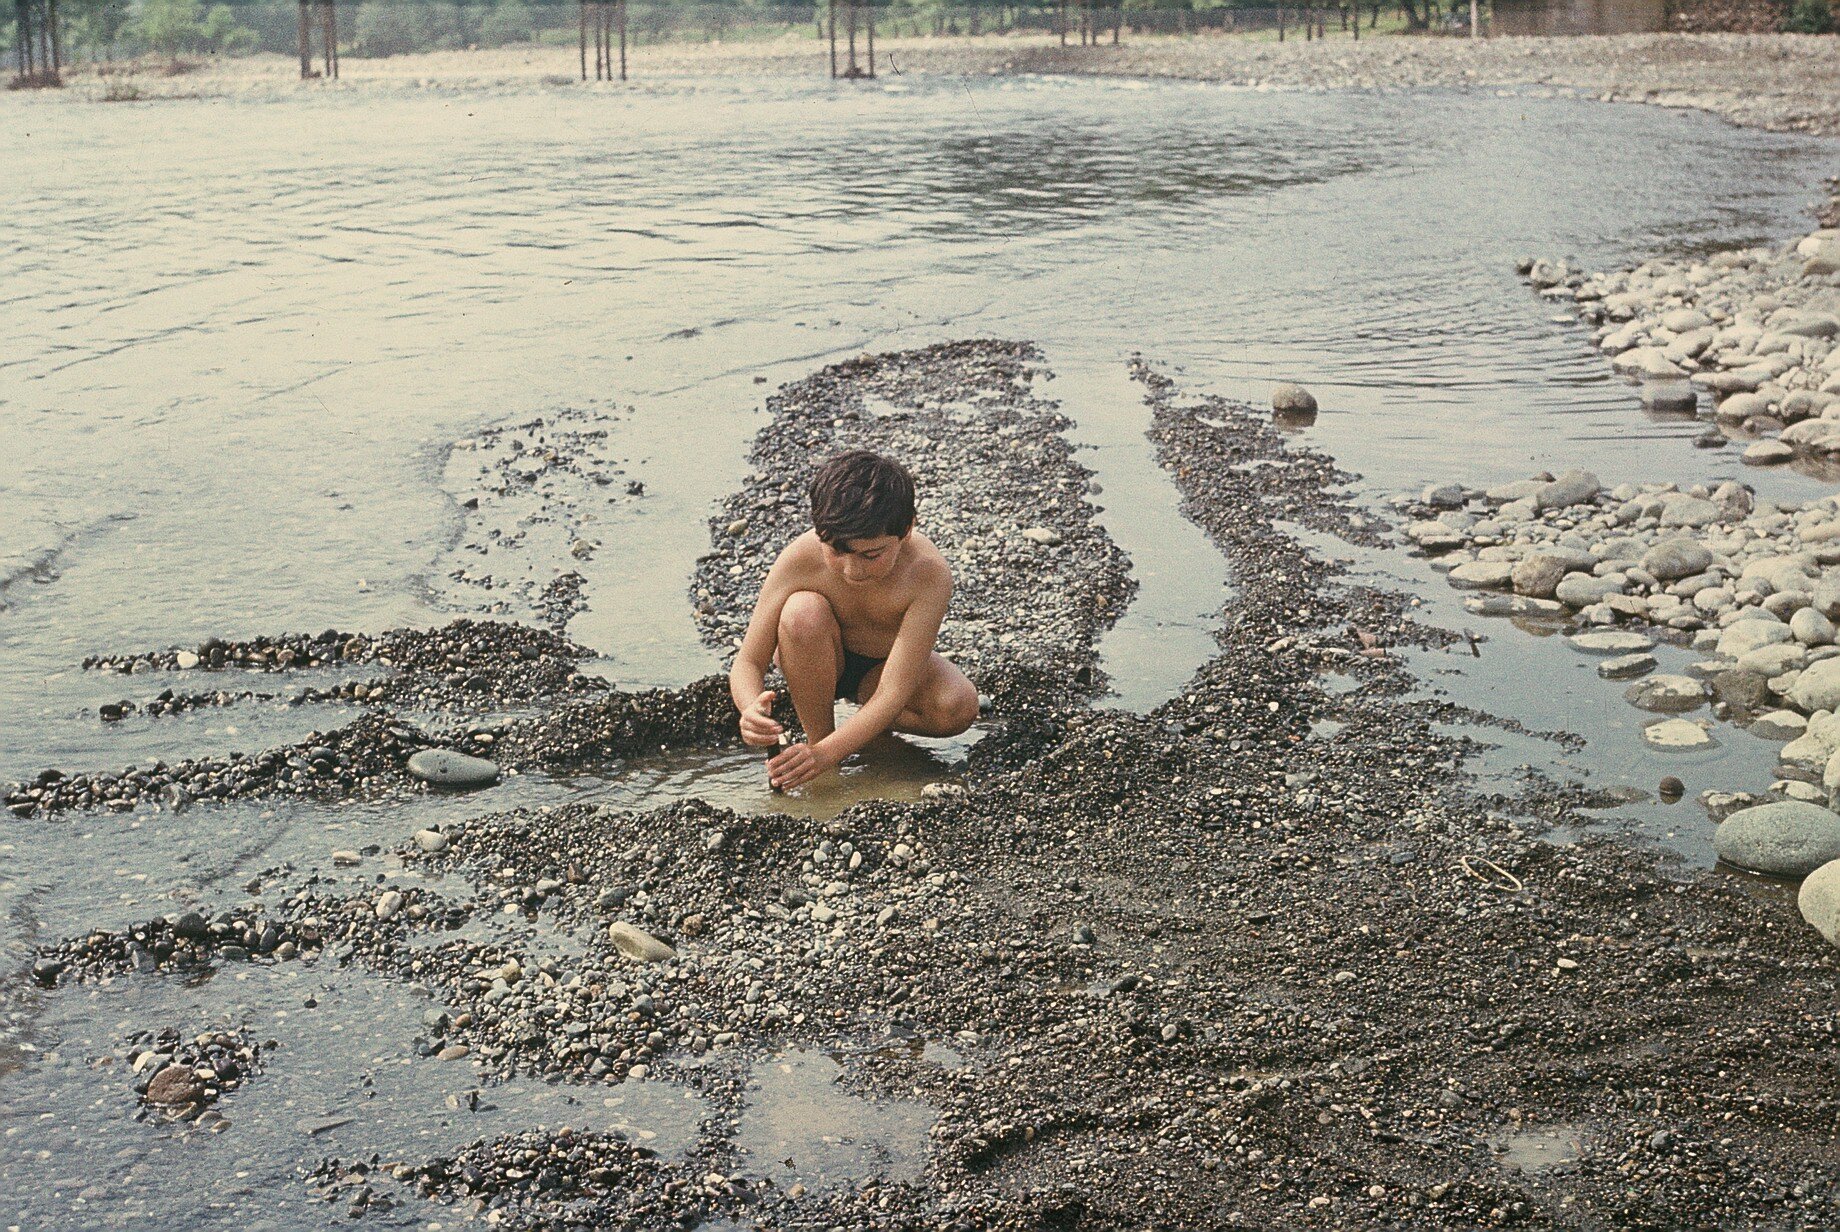 მდინარე ხობისწყალი 80-ნი წლების დასაწყისში